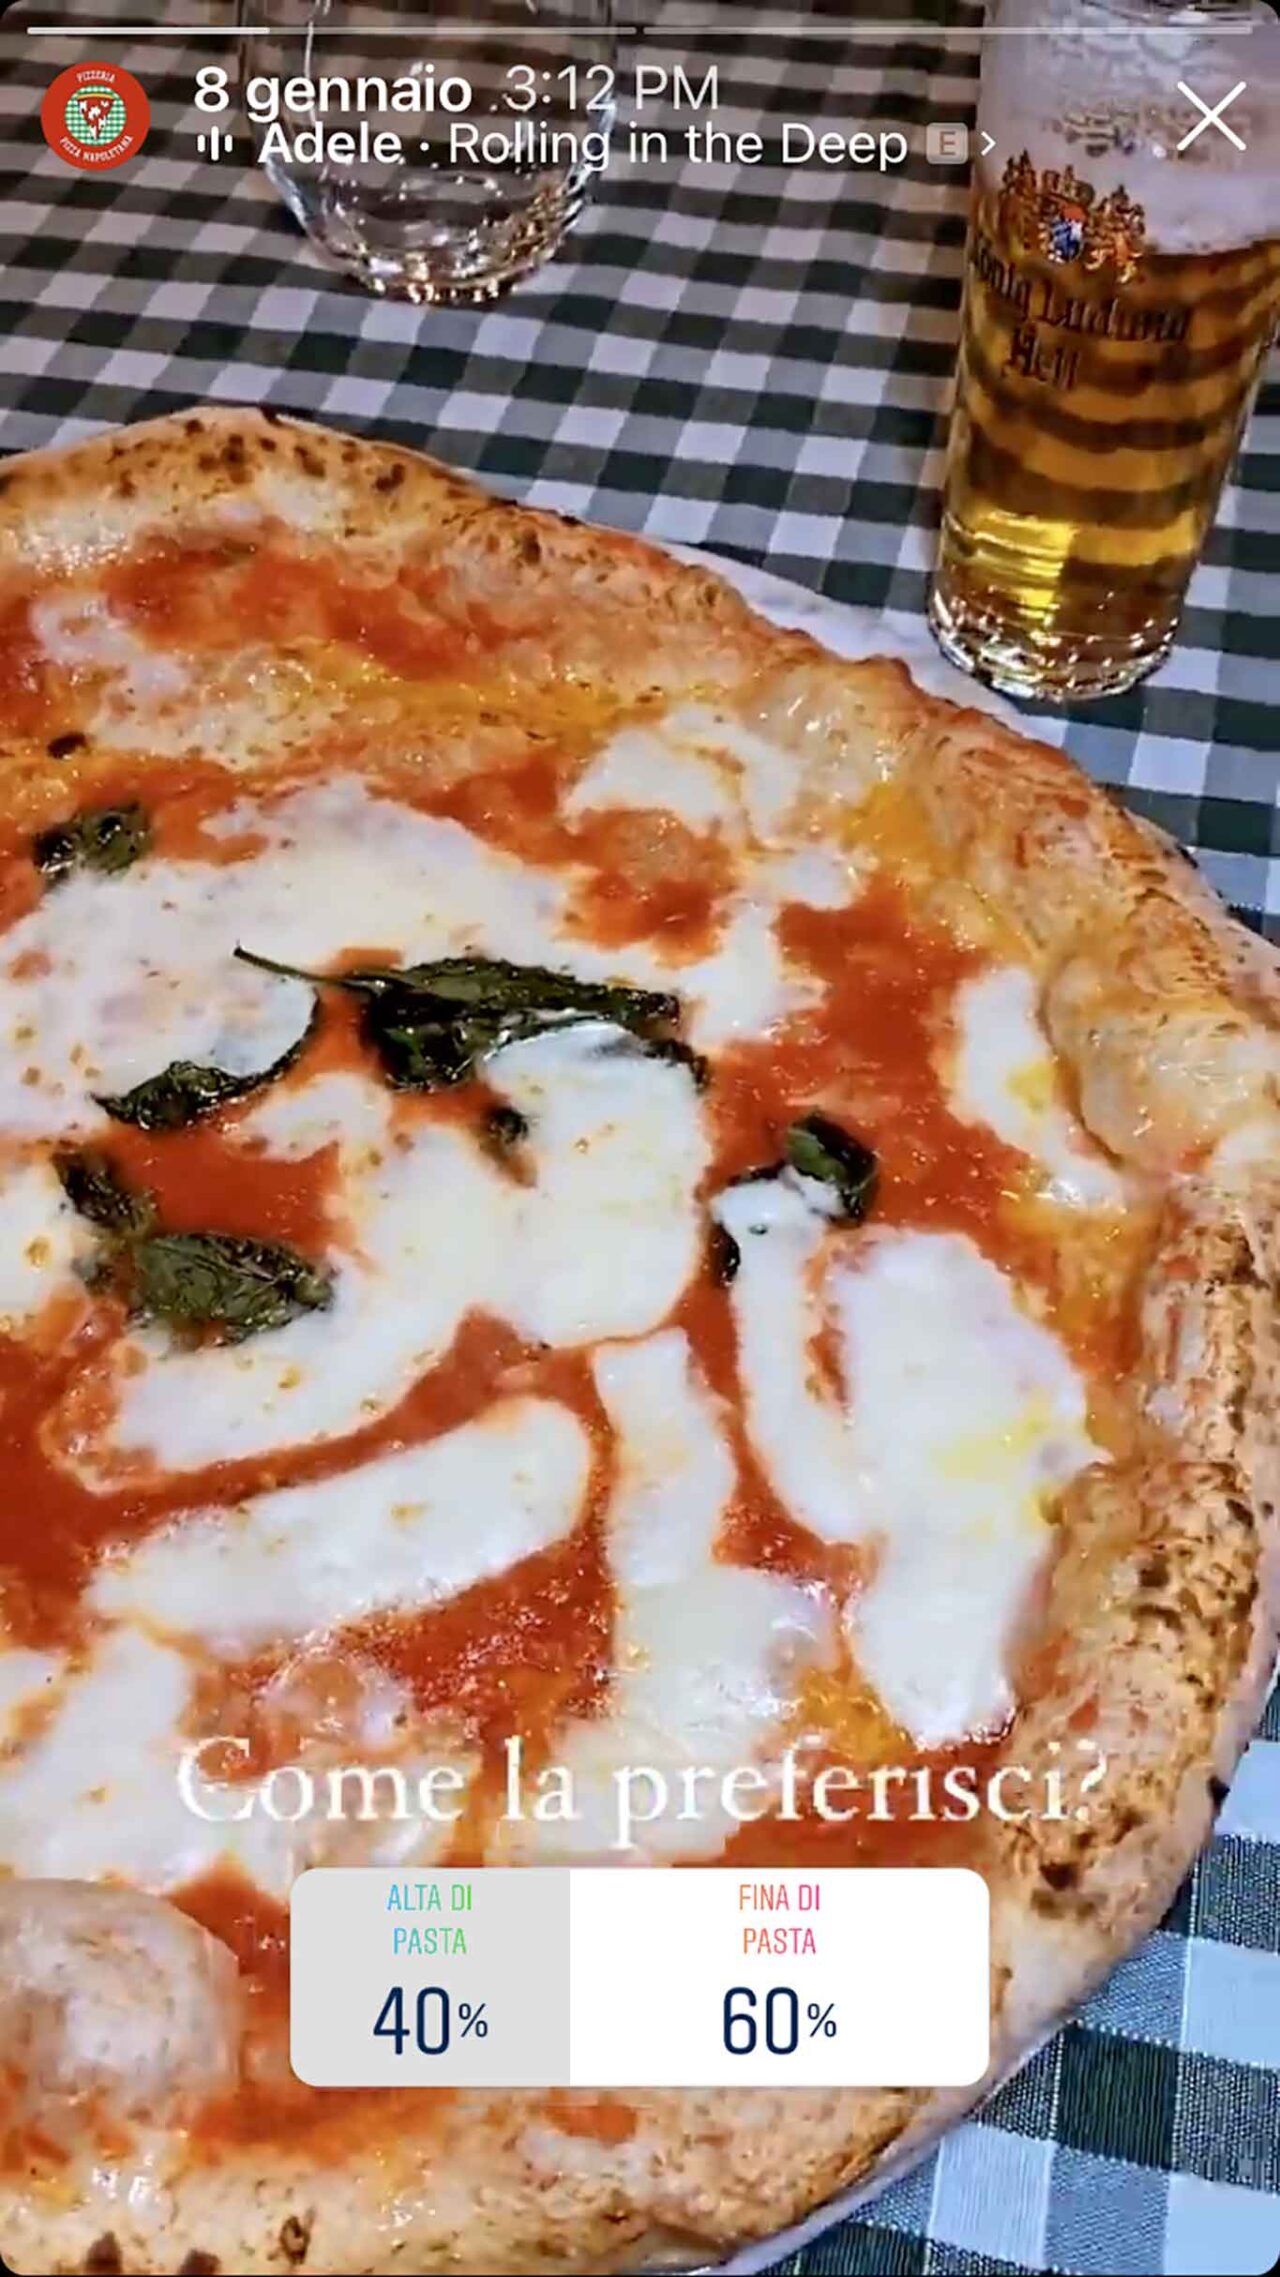 pizza alta o fina di pasta sondaggio instagram